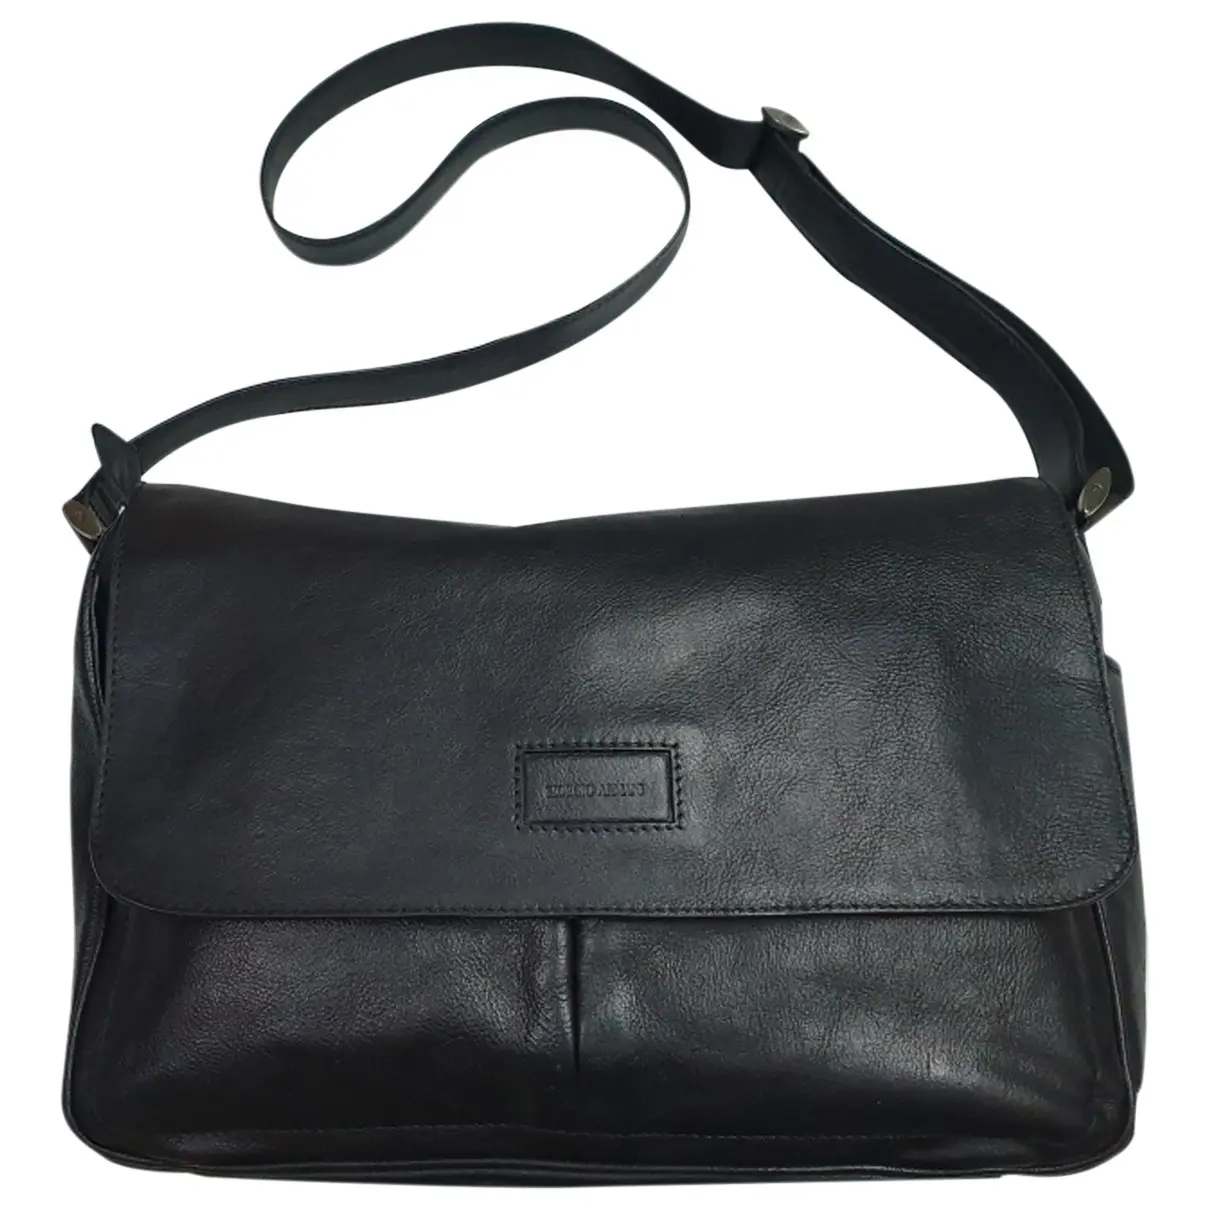 Leather satchel Giorgio Armani